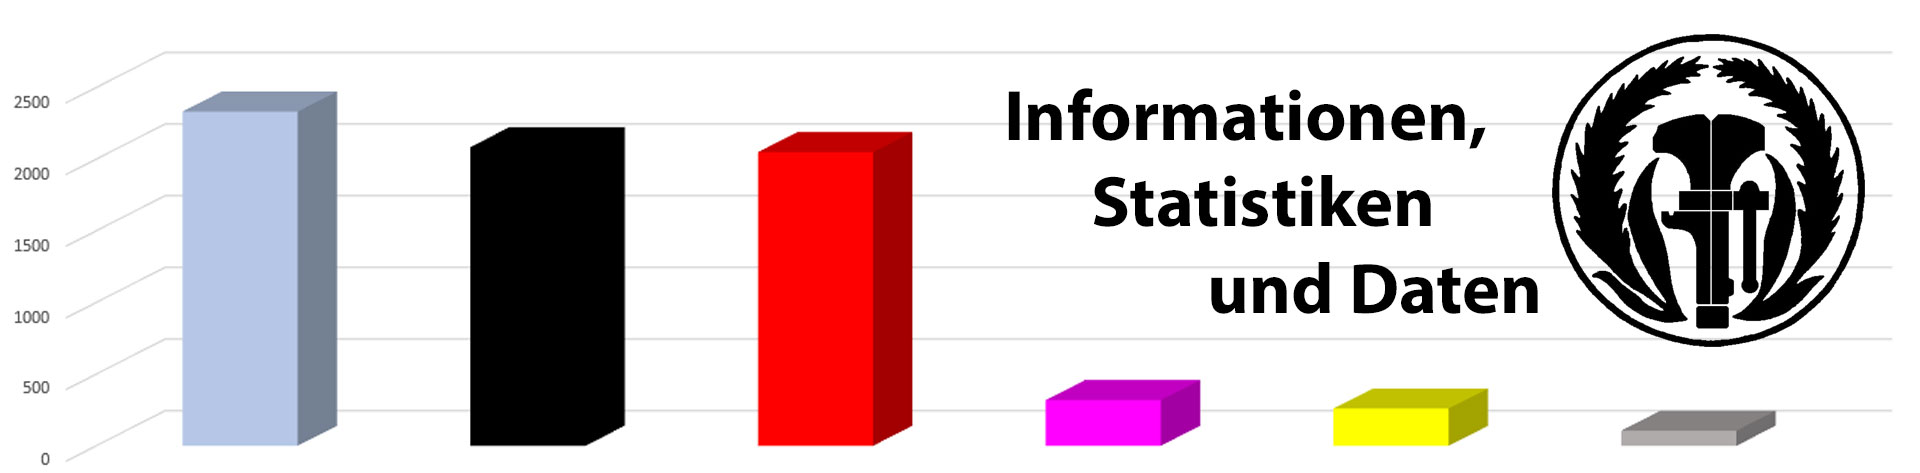 Logo Informationen, Statistiken und weiter Daten